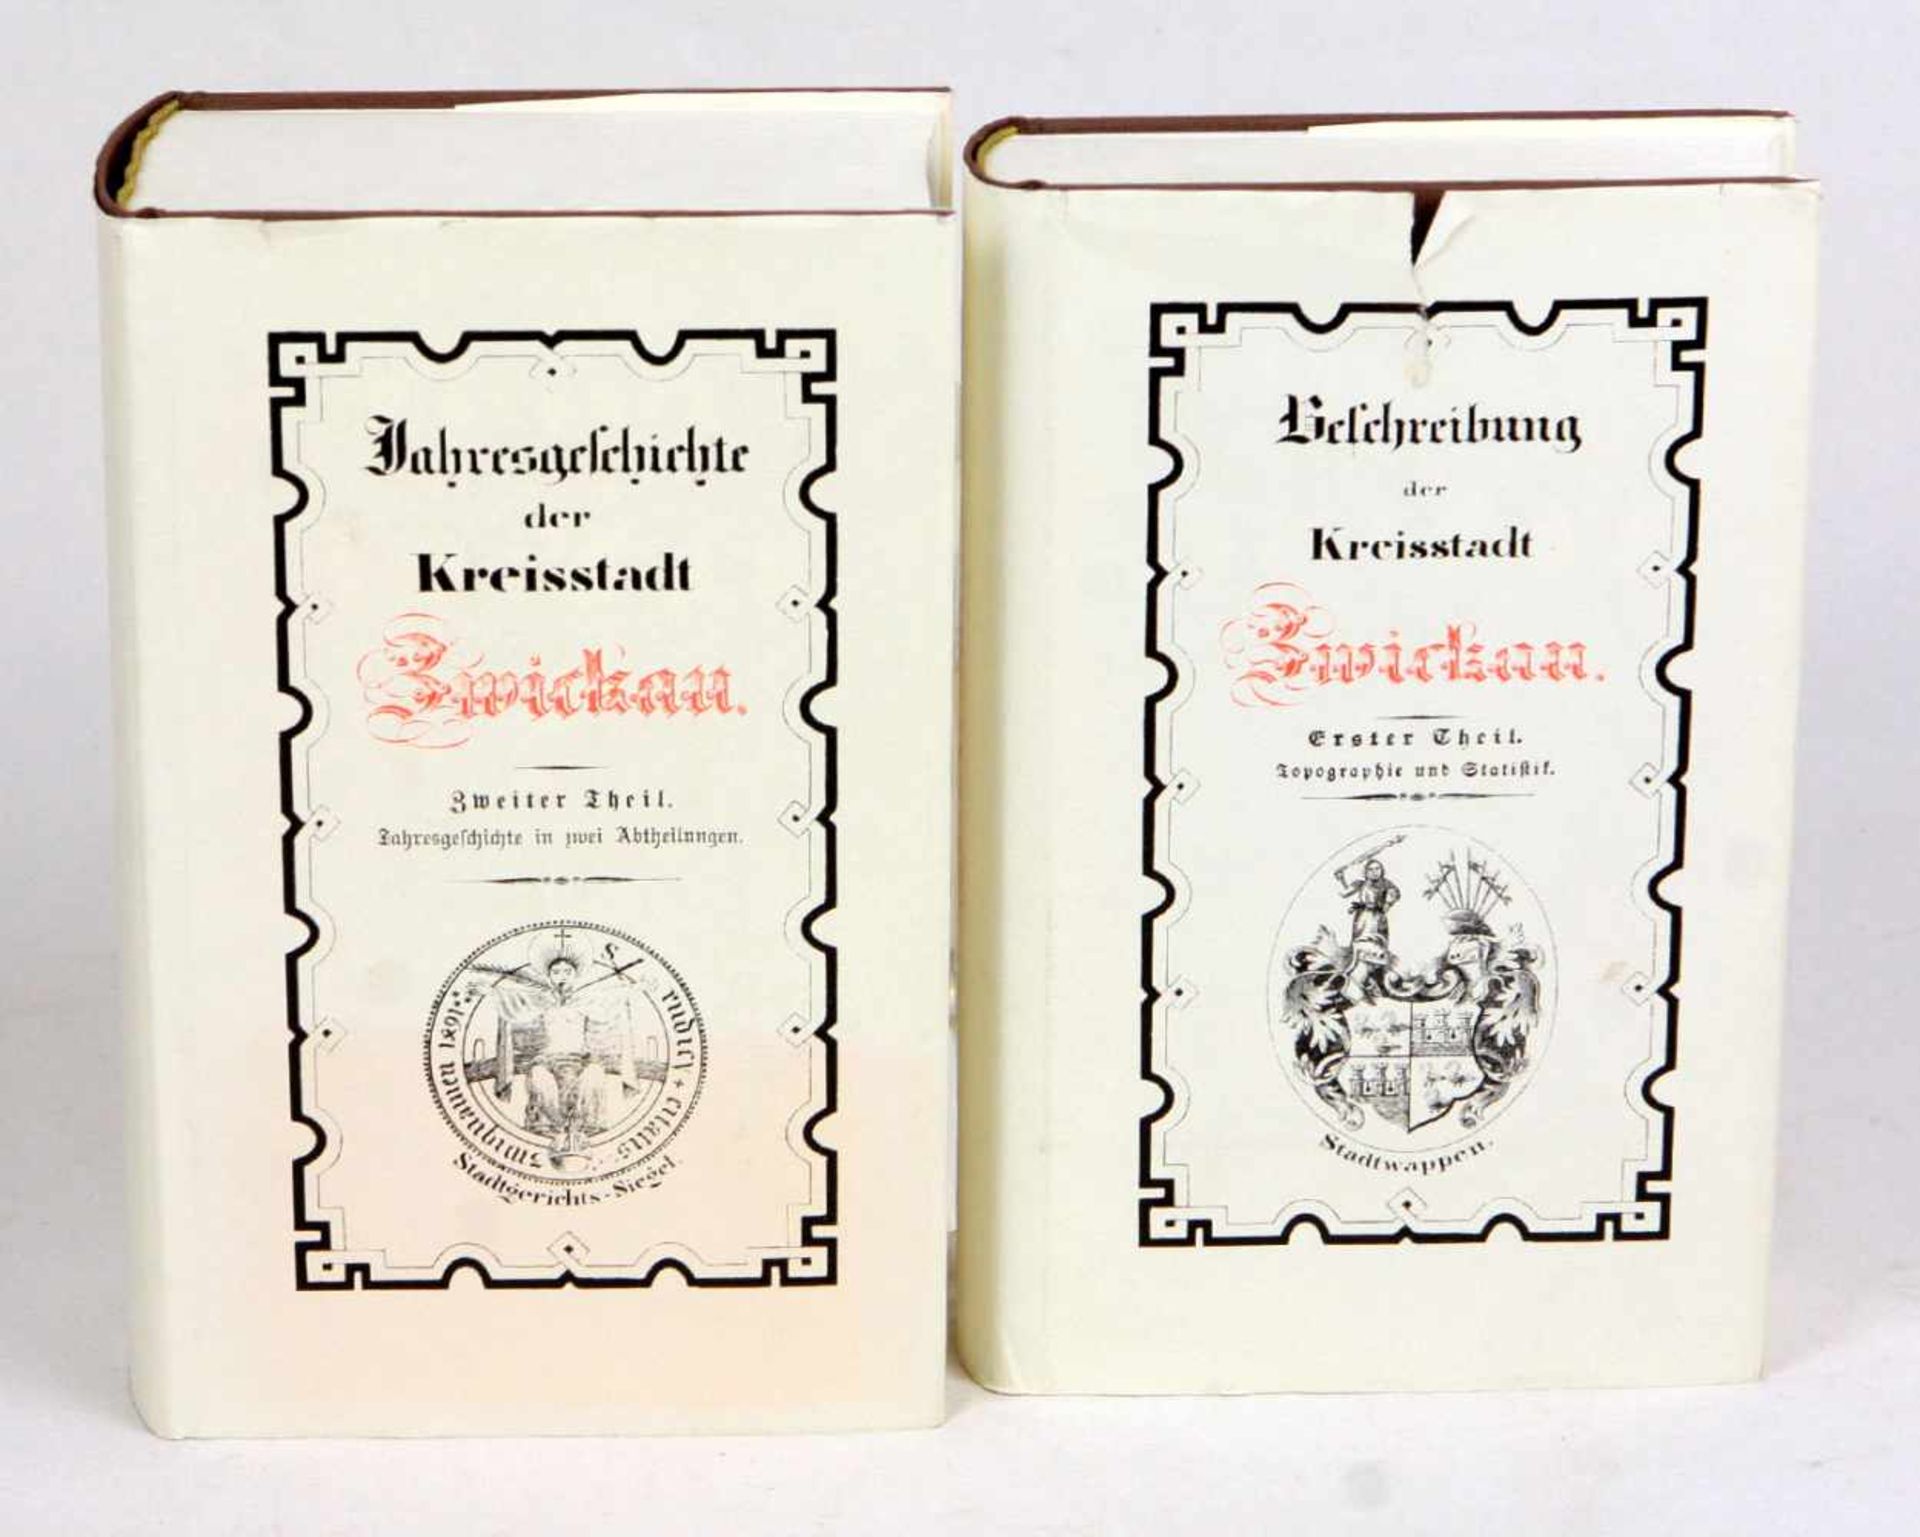 2 Bände Chronik Zwickau*Beschreibung der Kreisstadt Zwickau* u. *Jahresgeschichte der Kreisstadt